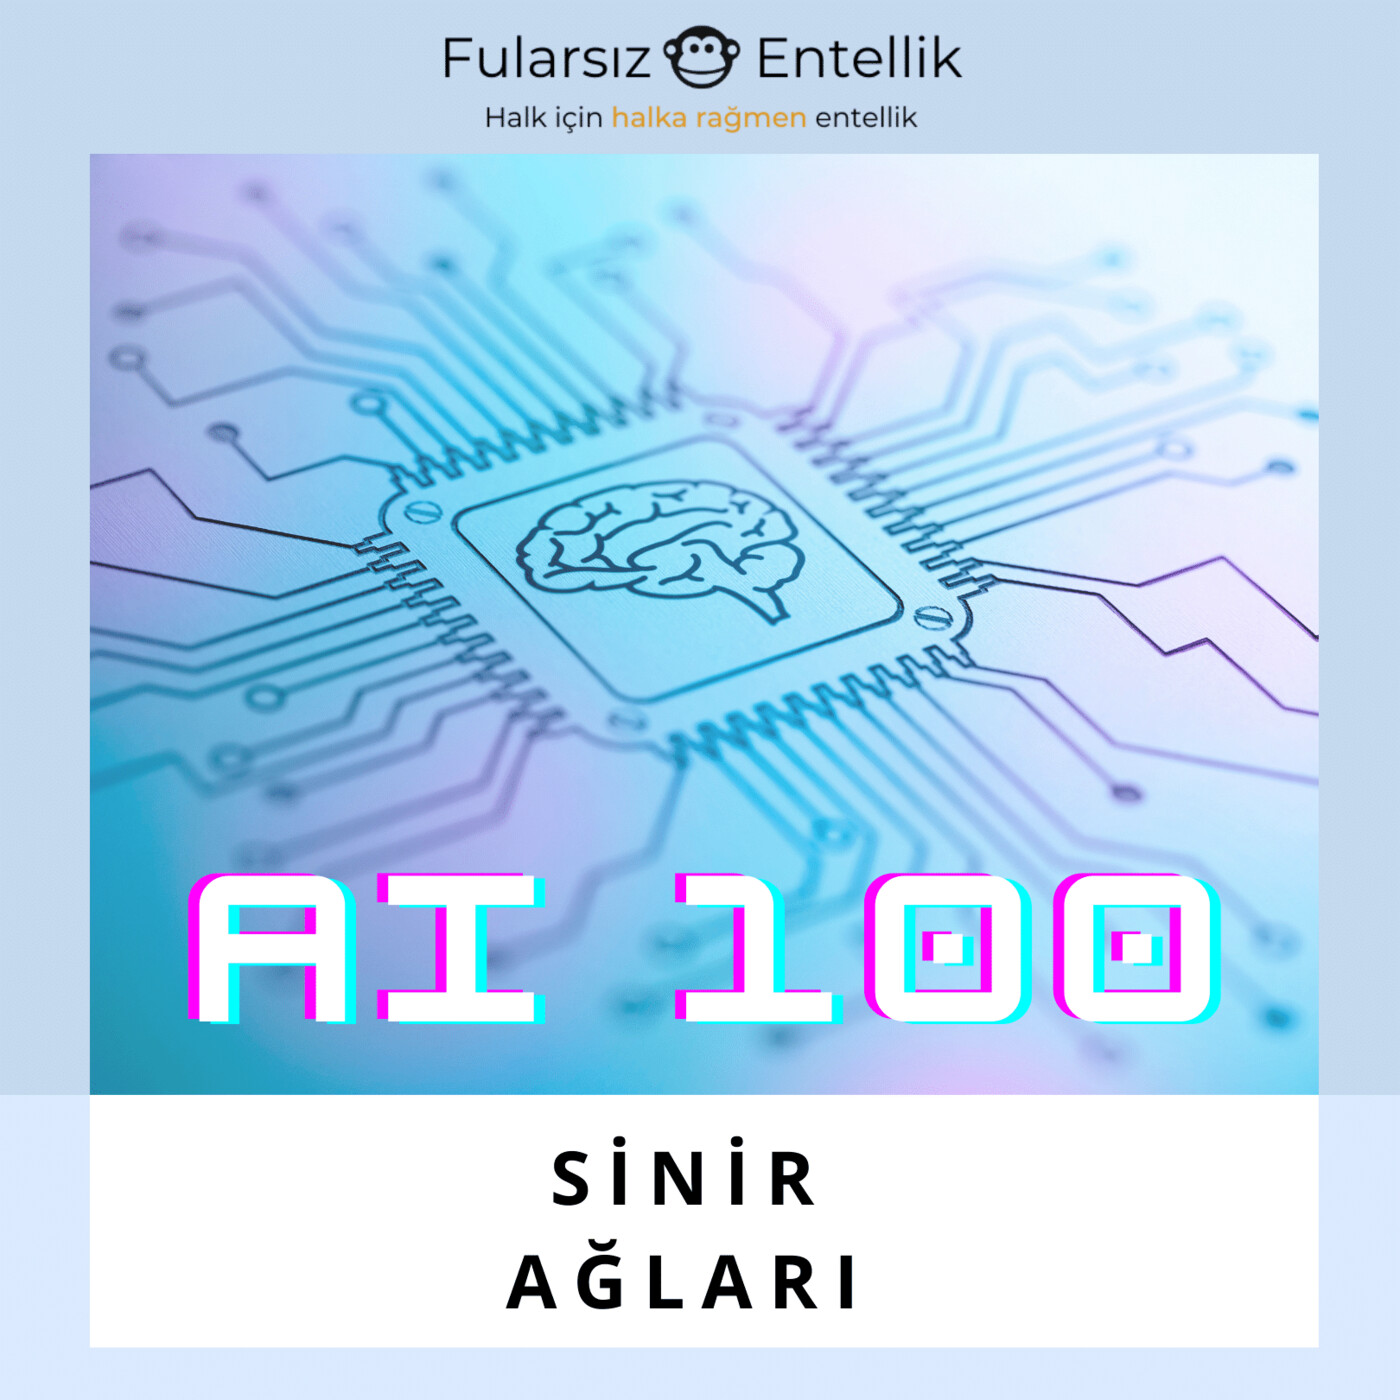 AI 100: Sinir Ağları (Neural Nets)